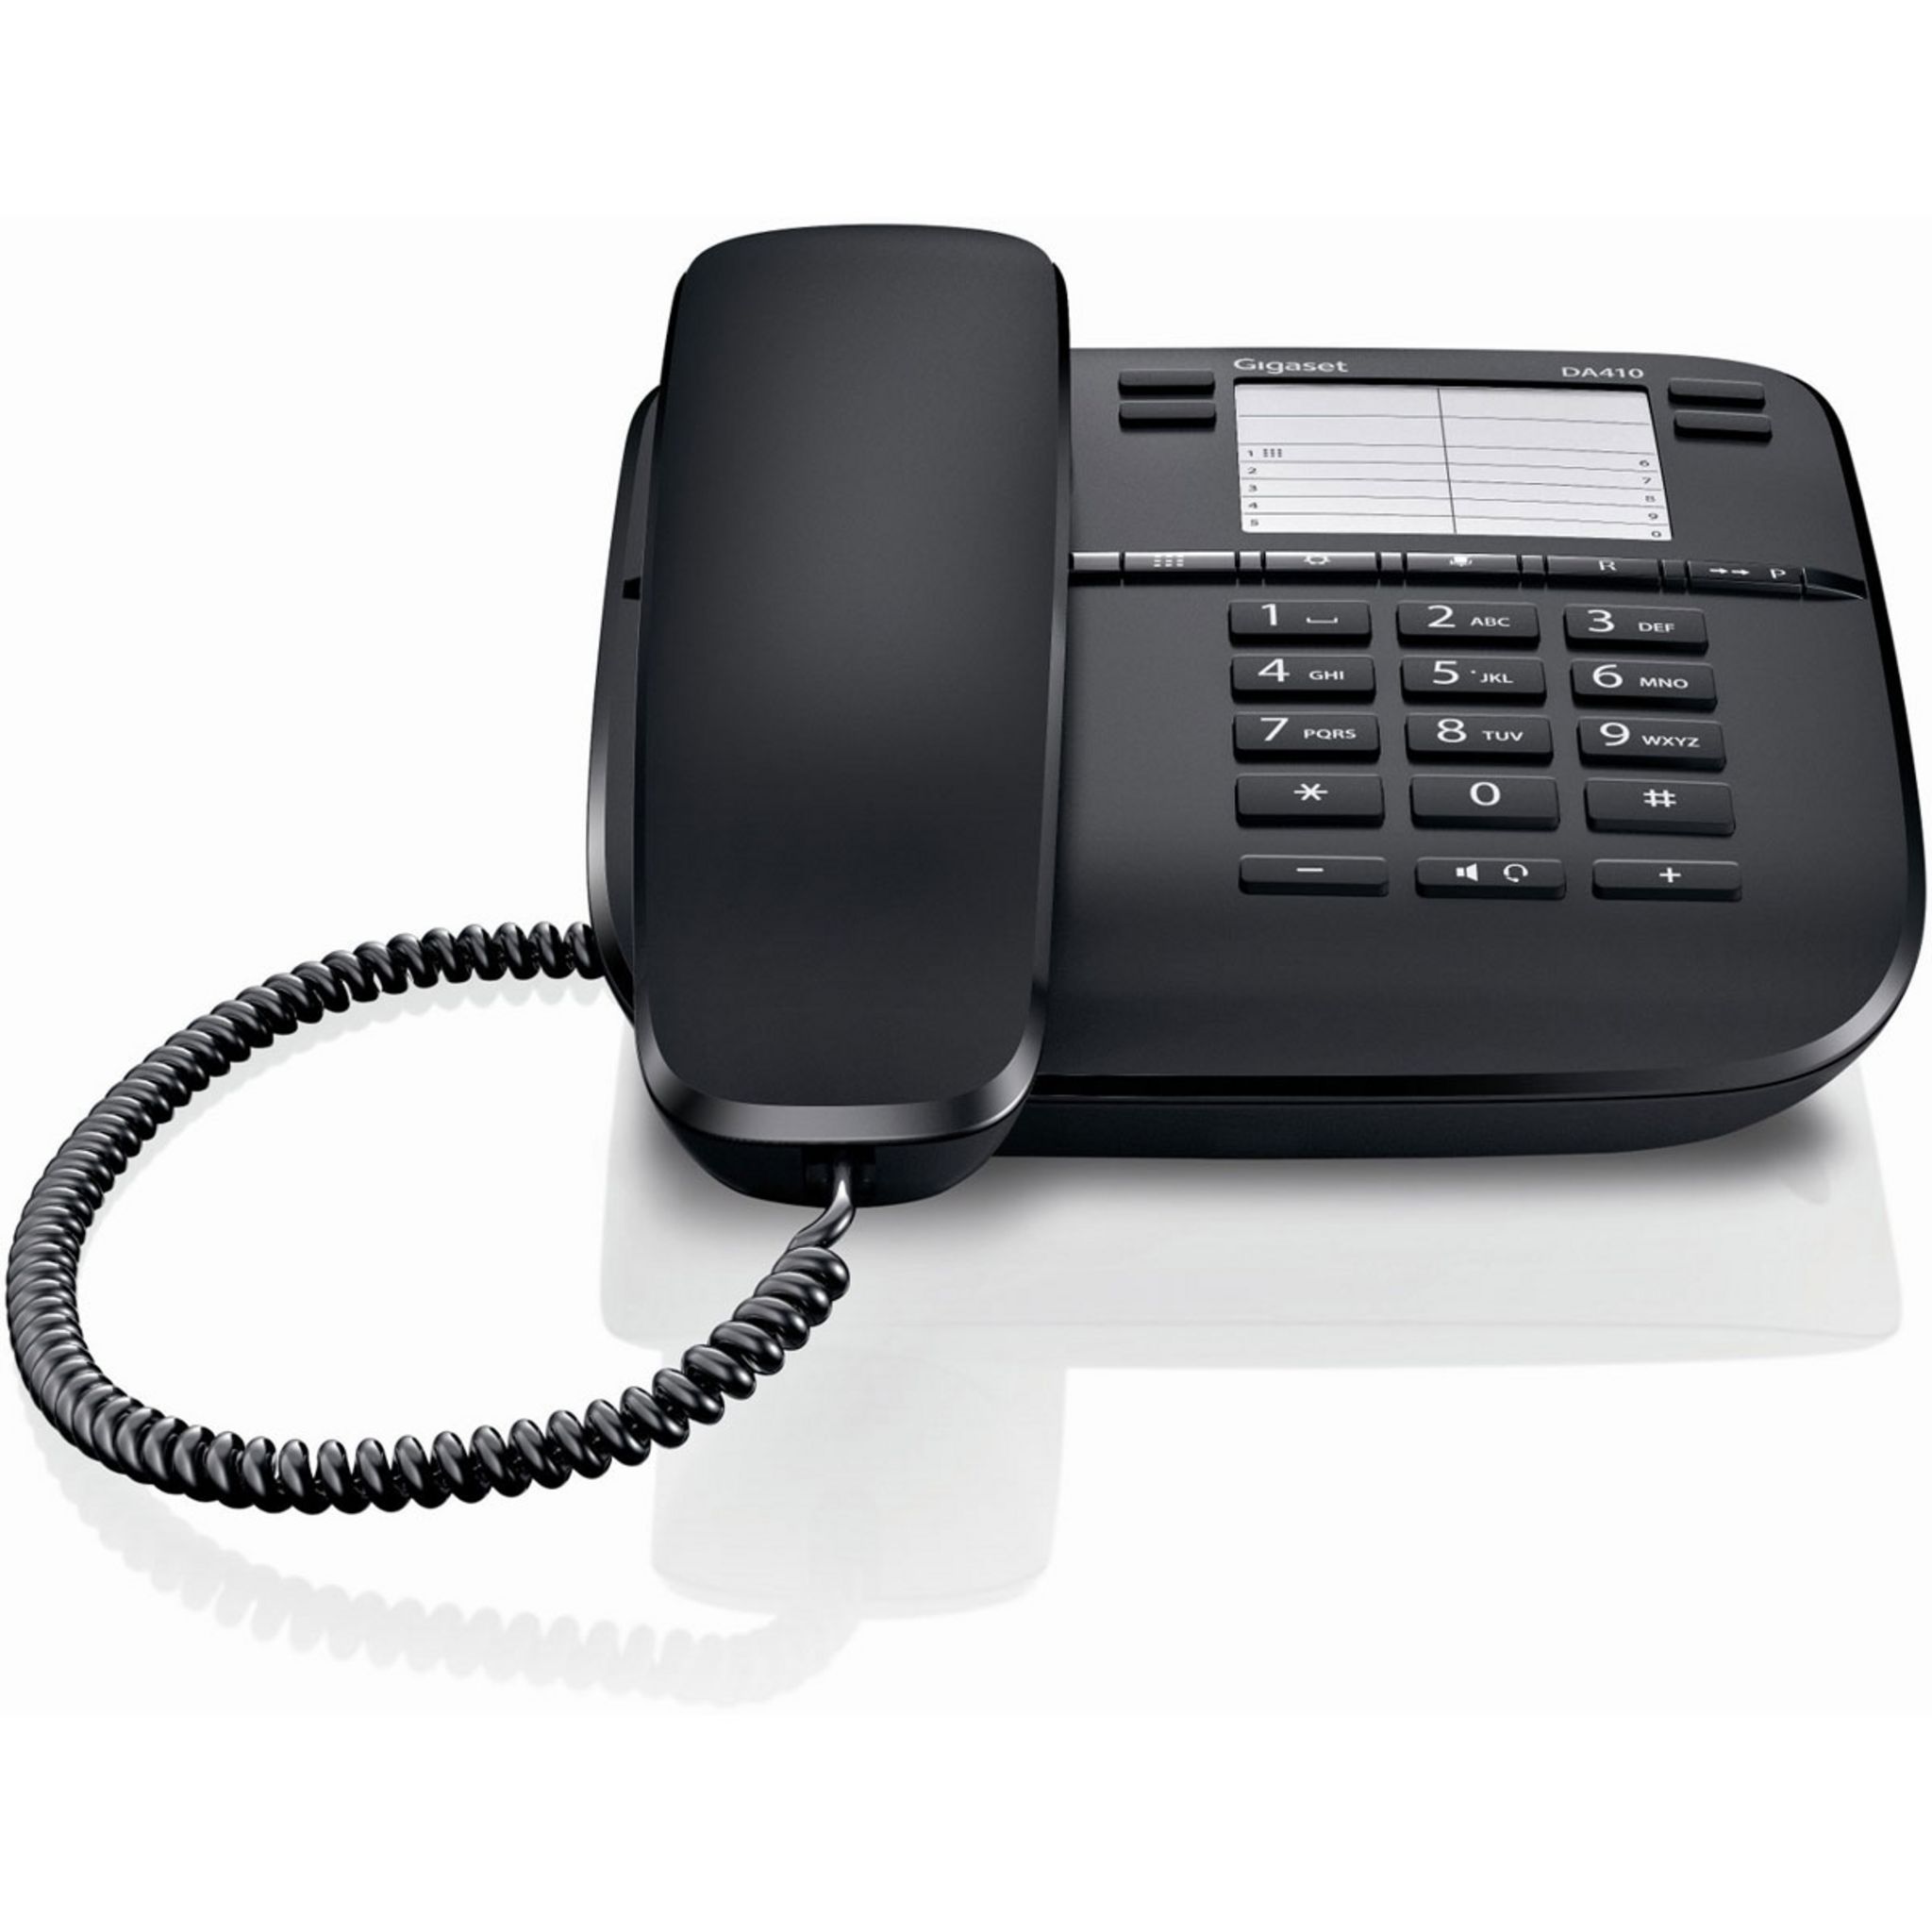 Купить телефон стационарный проводной. Gigaset da310. Телефон Gigaset da410 (черный). Телефон Gigaset da510 (черный). Телефон Gigaset da310 Black.